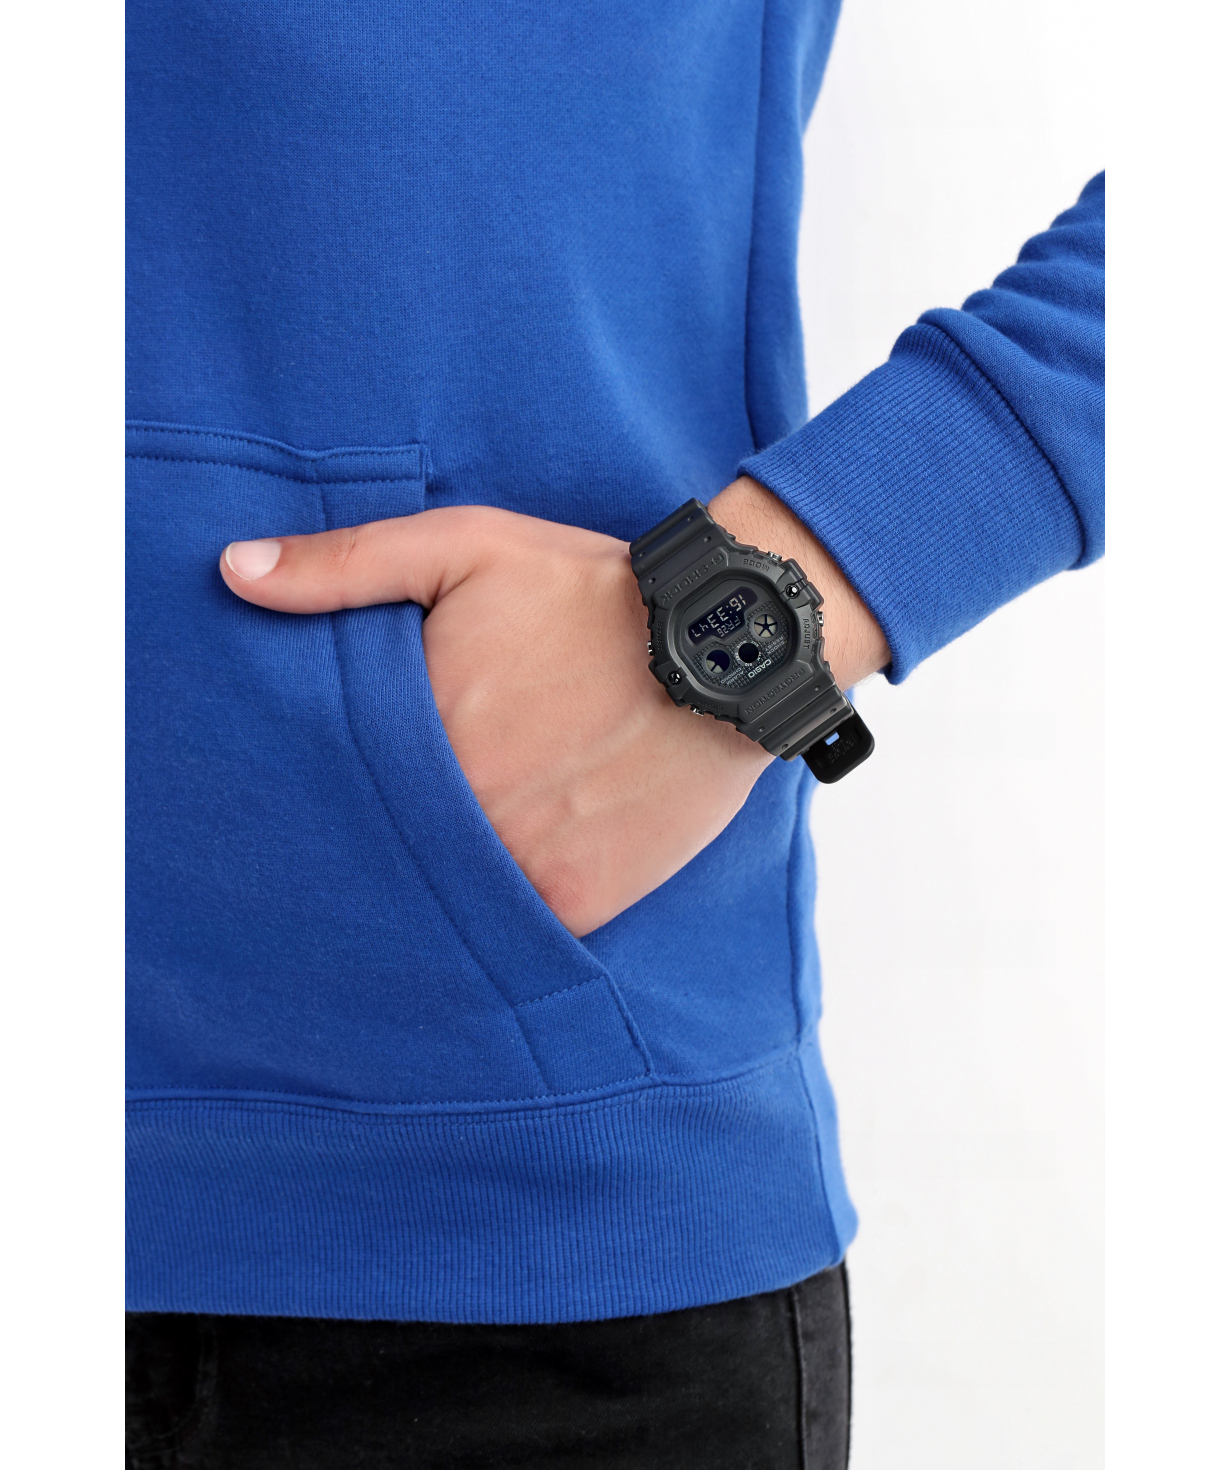 Ժամացույց  «Casio» ձեռքի  DW-5900BB-1DR